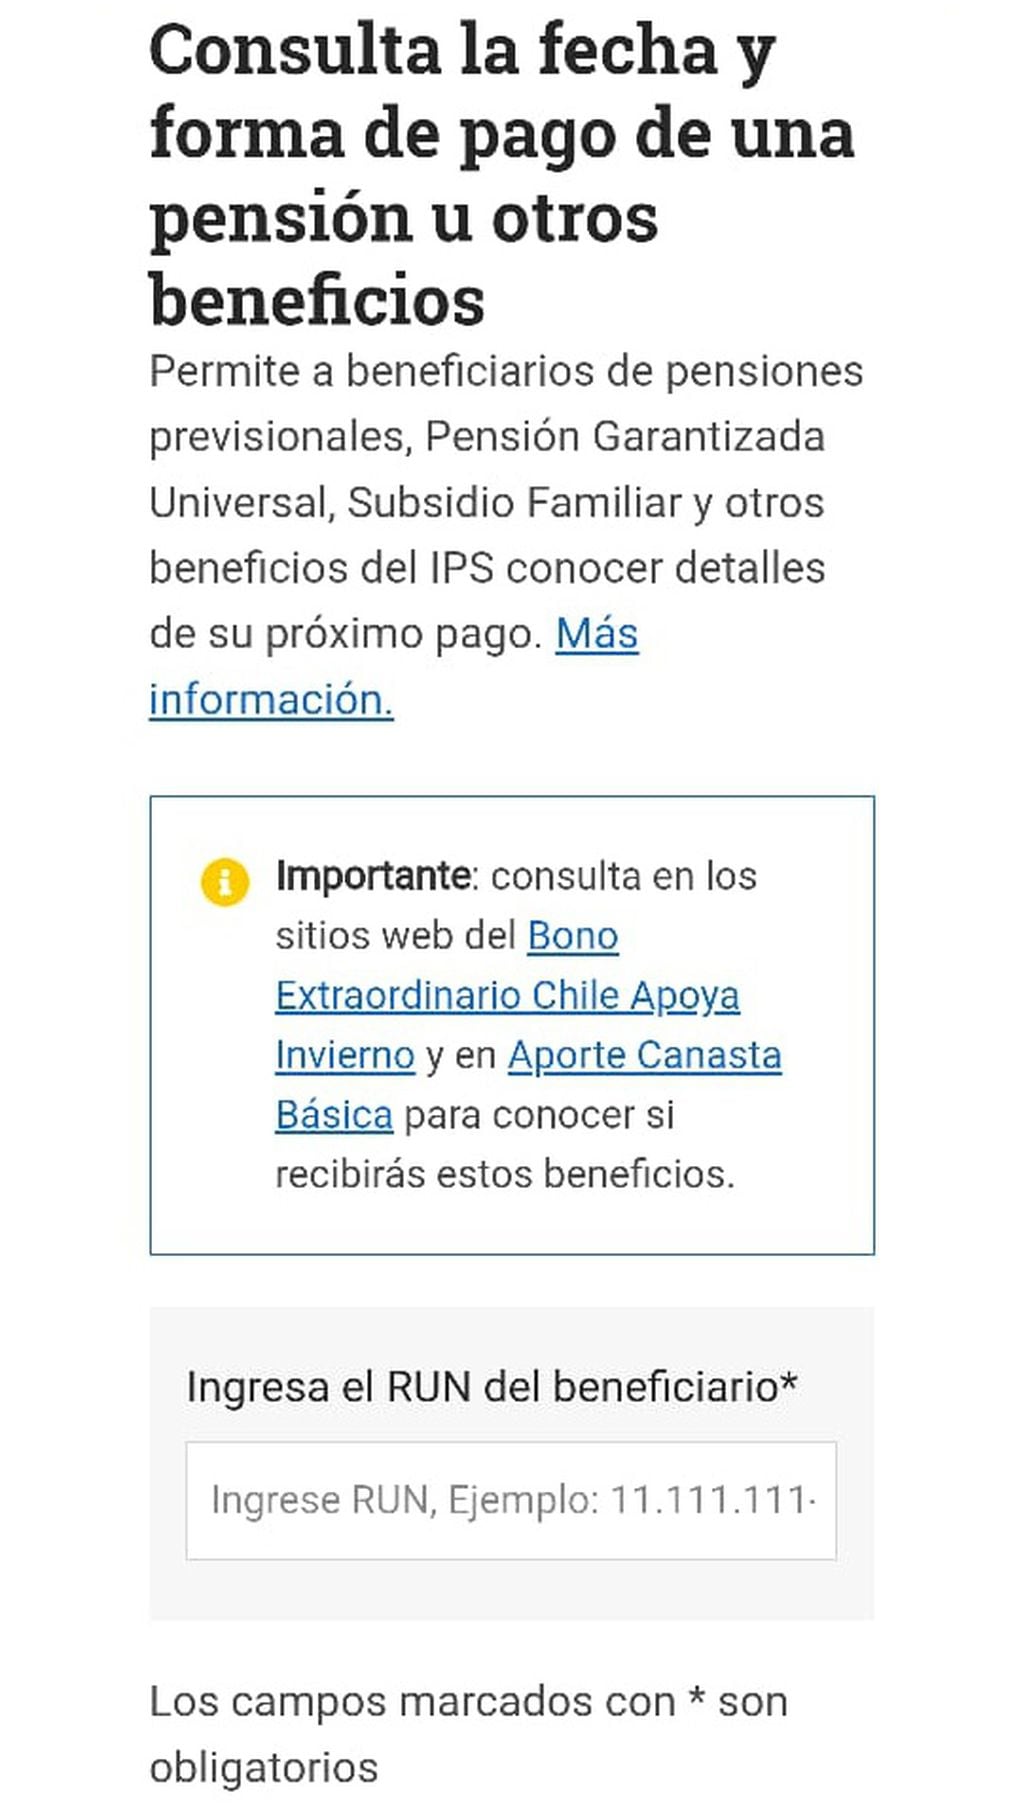 Página de consulta de beneficios del IPS.